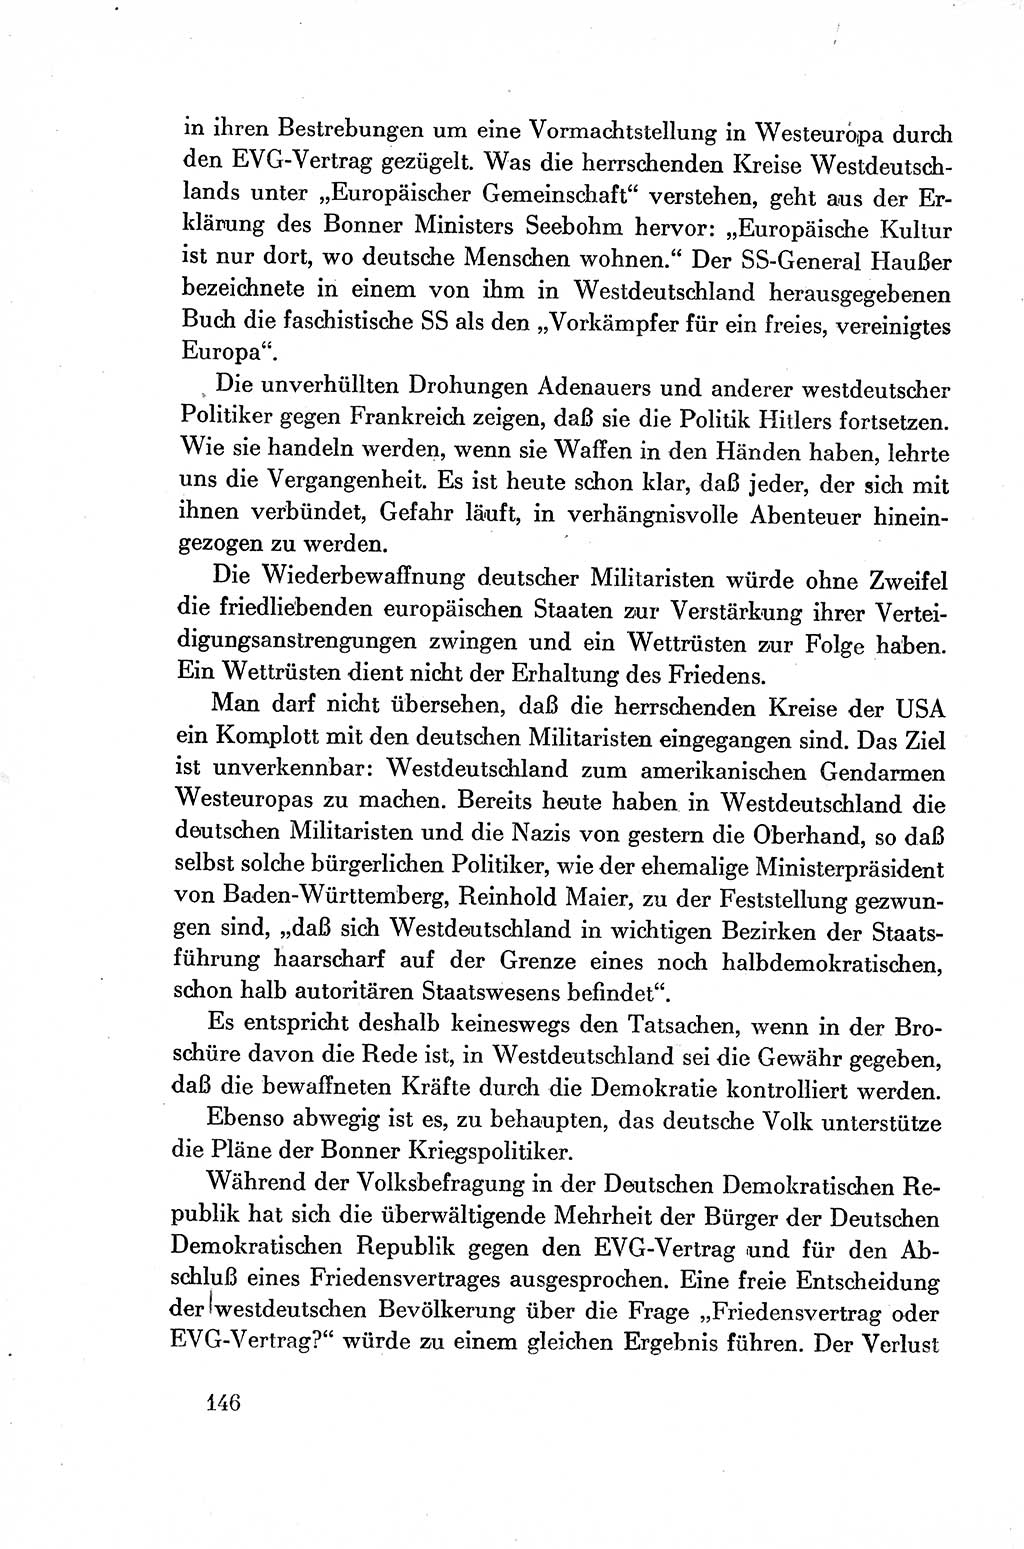 Dokumente der Sozialistischen Einheitspartei Deutschlands (SED) [Deutsche Demokratische Republik (DDR)] 1954-1955, Seite 146 (Dok. SED DDR 1954-1955, S. 146)